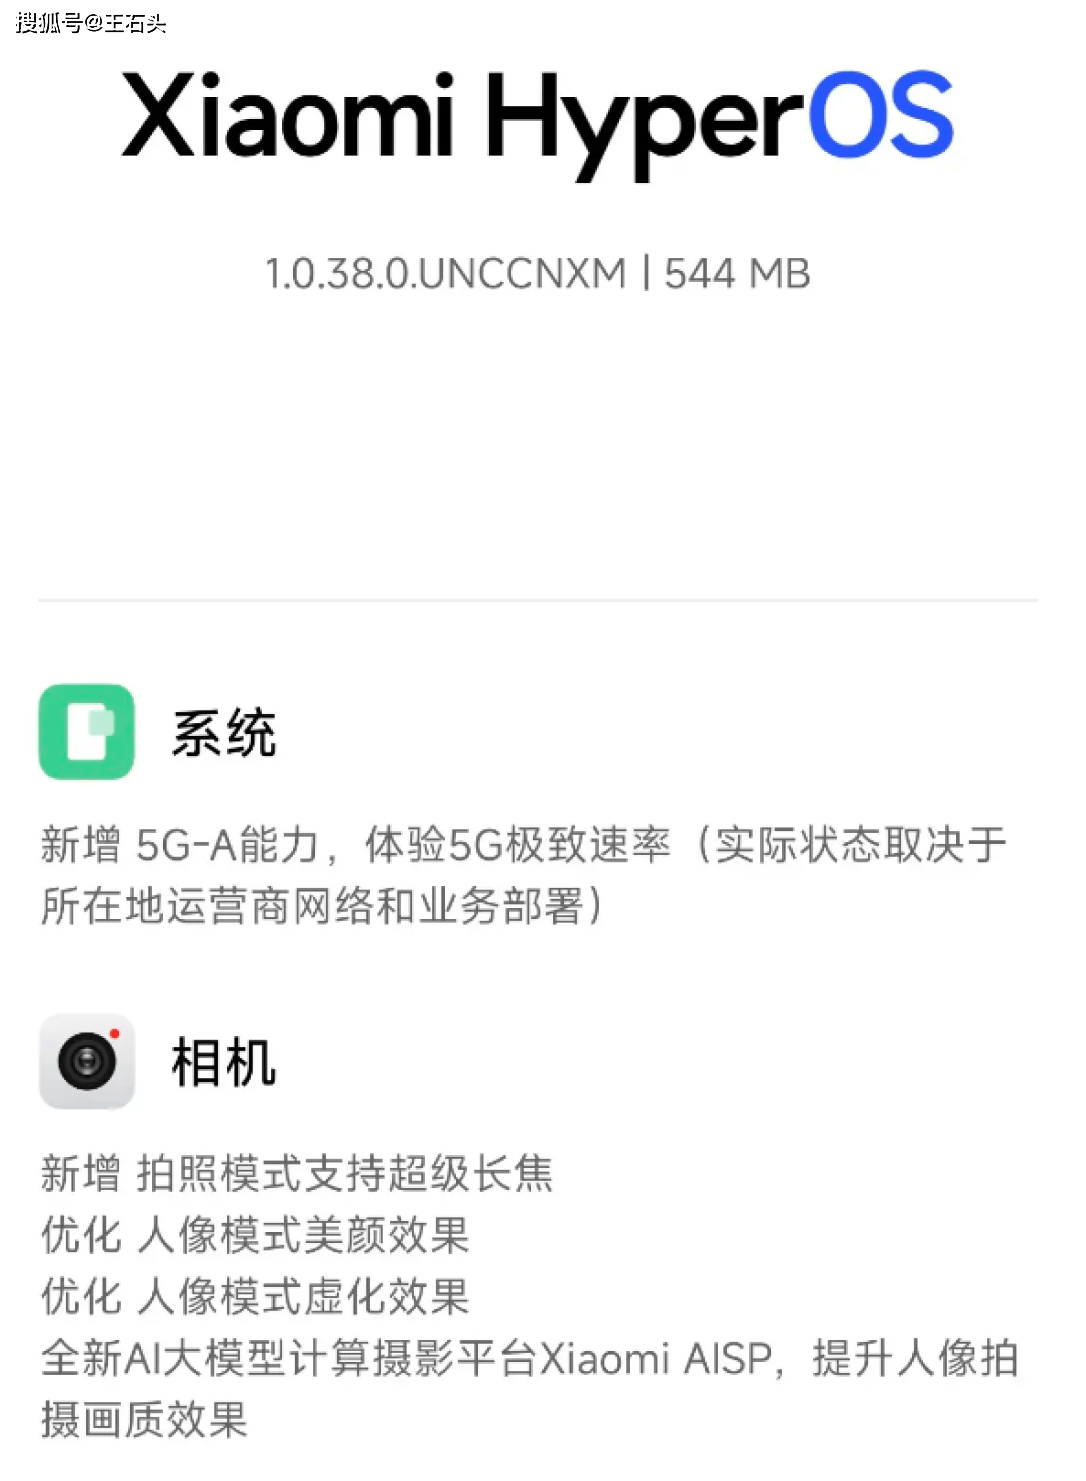 中国工信产业网 🌸澳门一肖一码一必开一肖🌸|苹果iOS18使用两天体验评测，电池有优化，5G信号满格  第4张